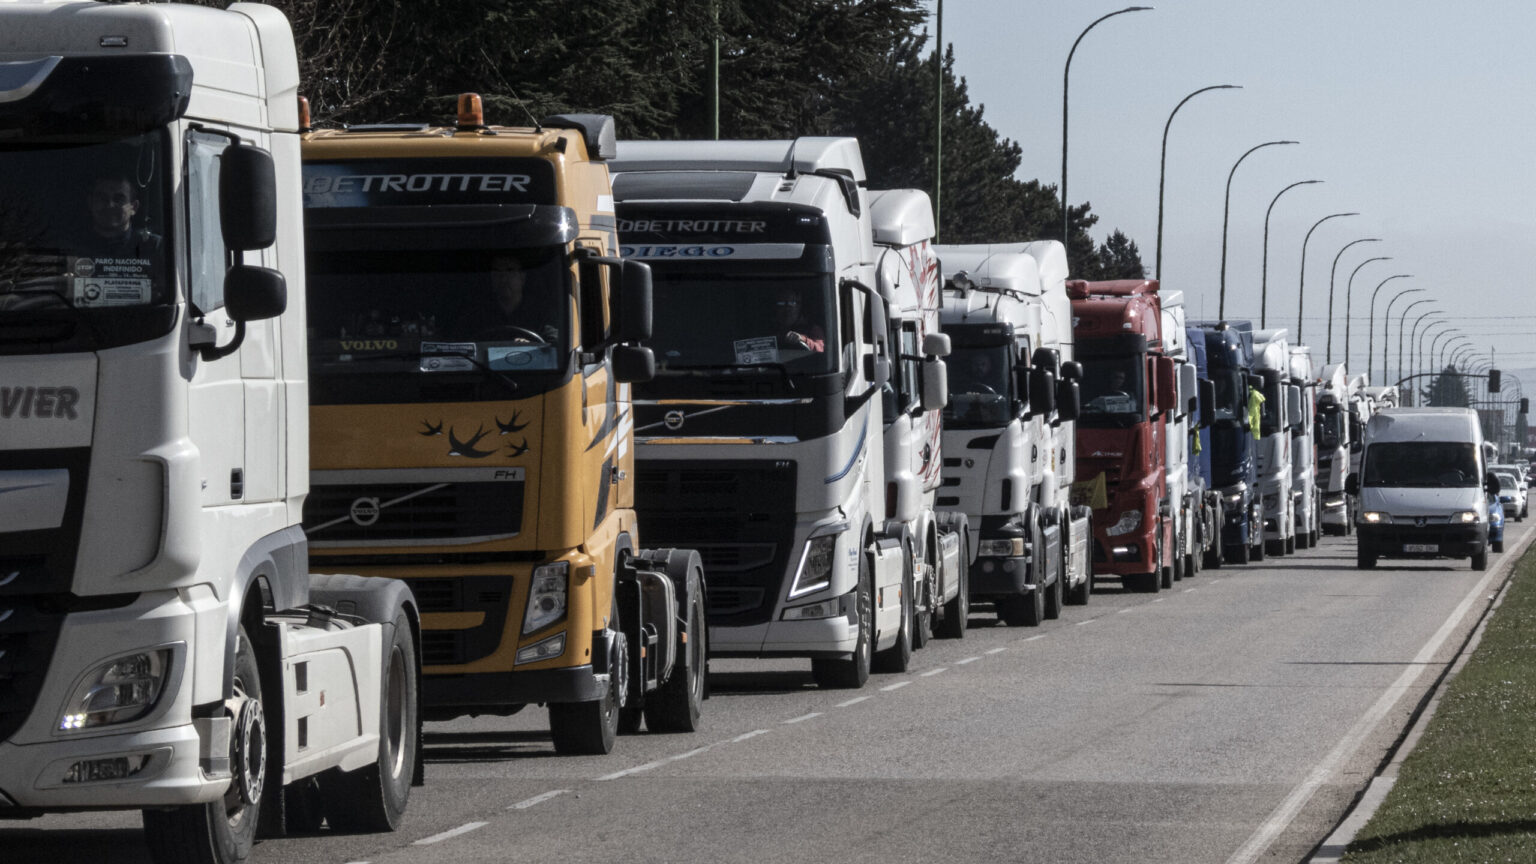 España necesita 15.000 transportistas para evitar problemas de desabastecimiento